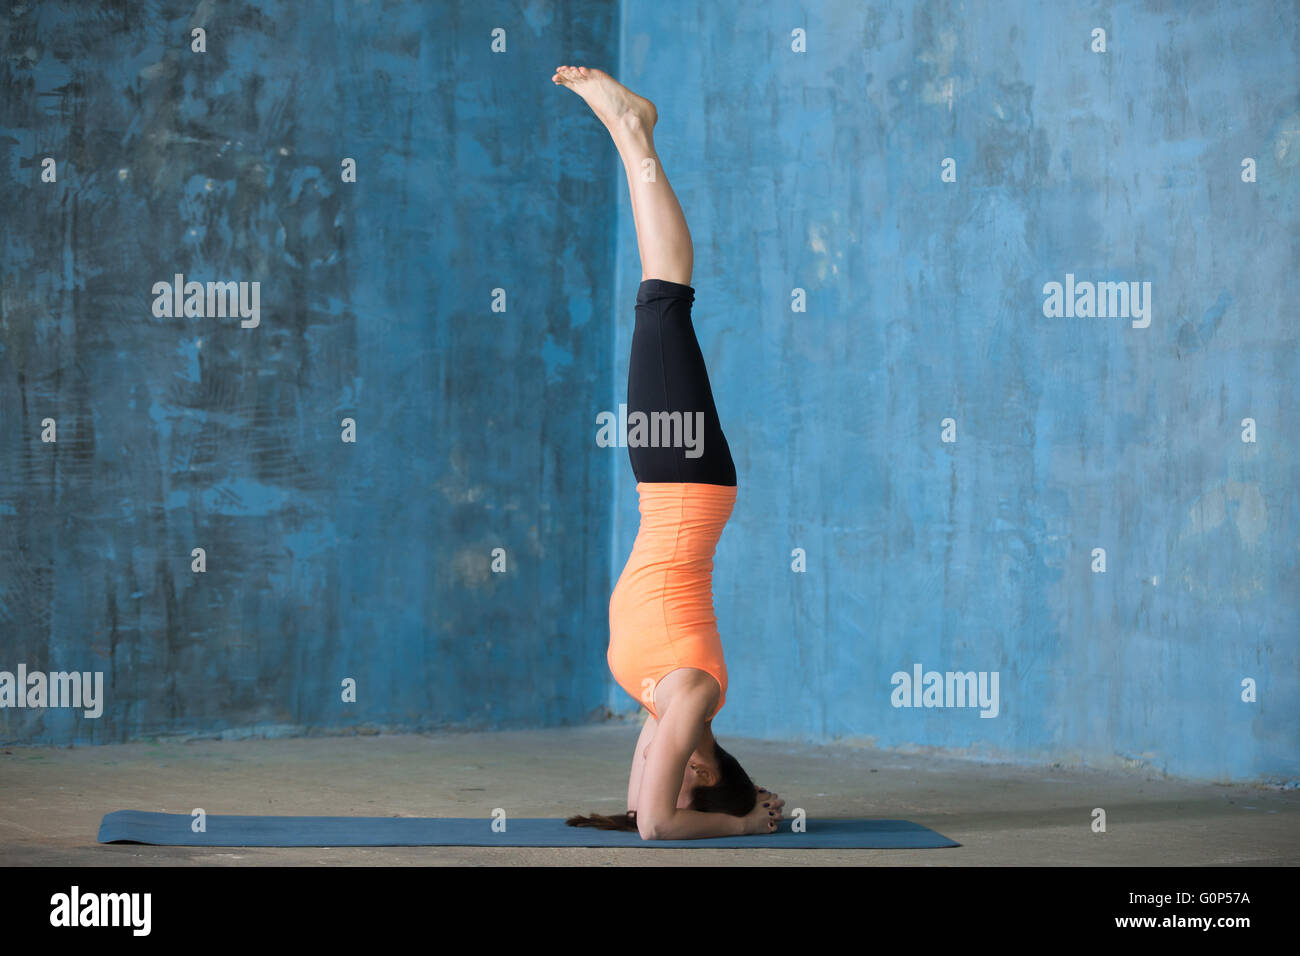 Belle jeune femme vêtue de vêtements de yoga à l'intérieur. Yogi girl working out in grunge mur bleu avec intérieur Banque D'Images